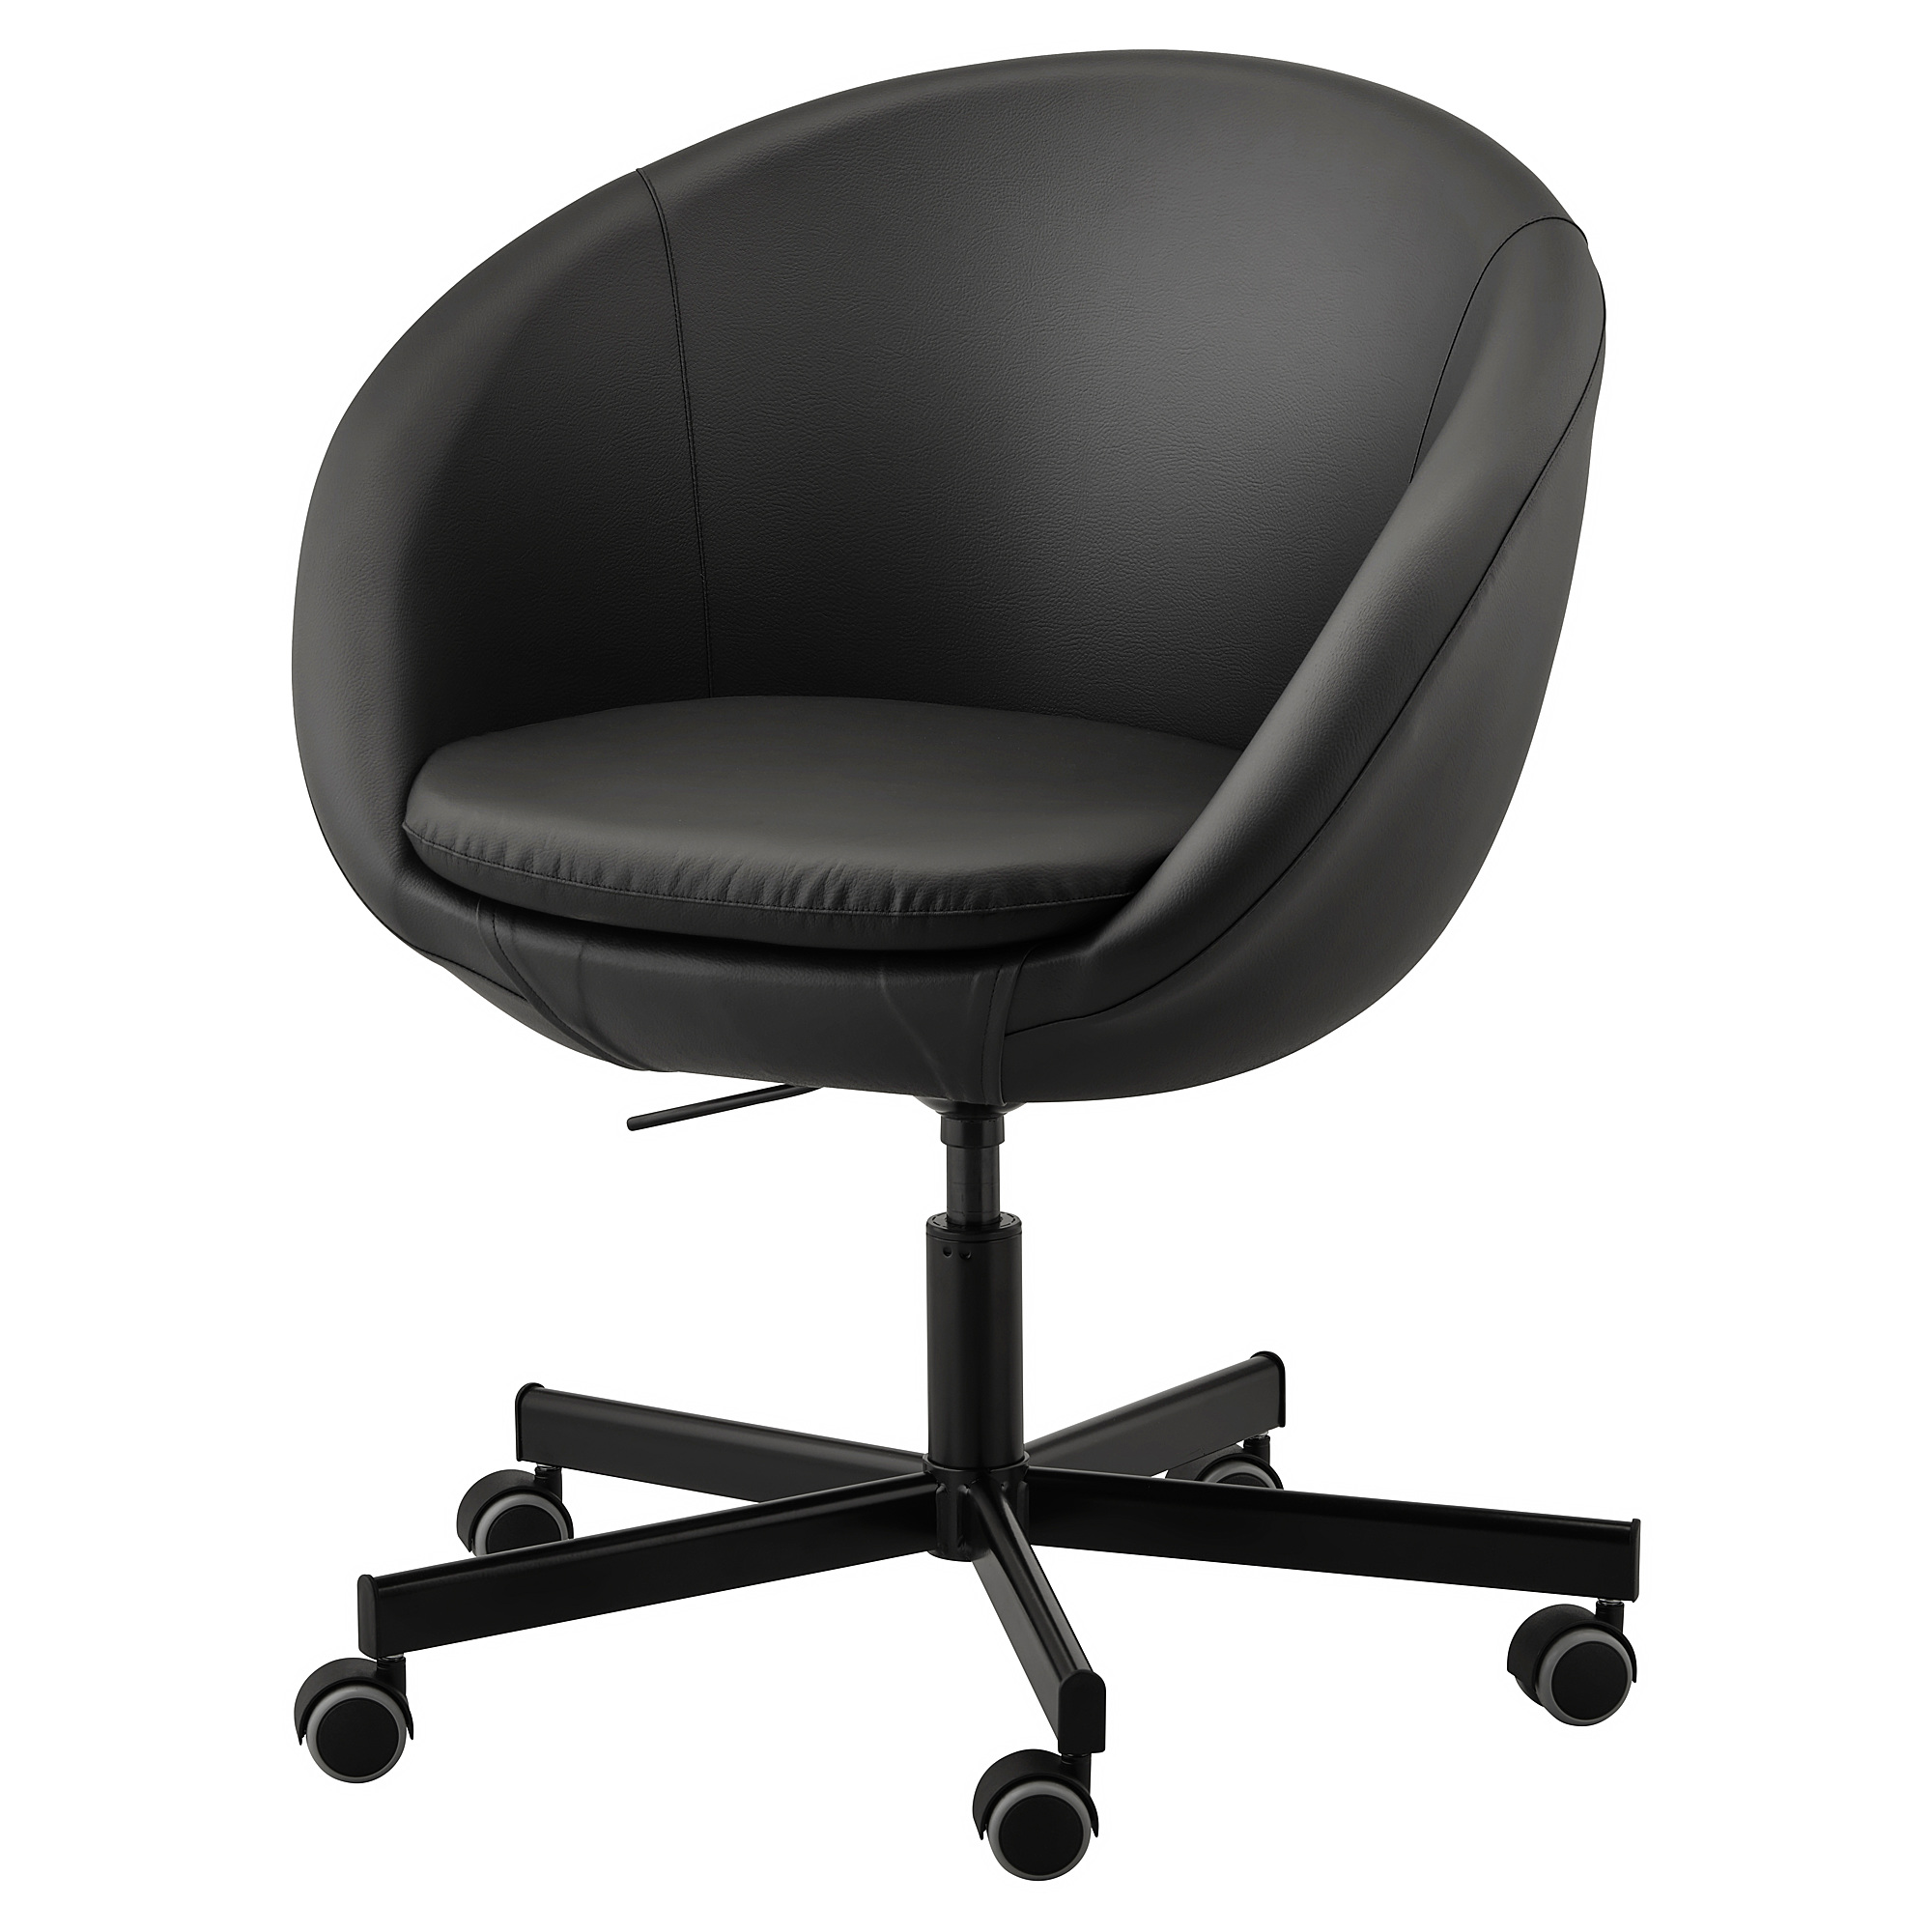 SKRUVSTA - 旋轉電腦椅, Idhult 黑色| IKEA 線上購物